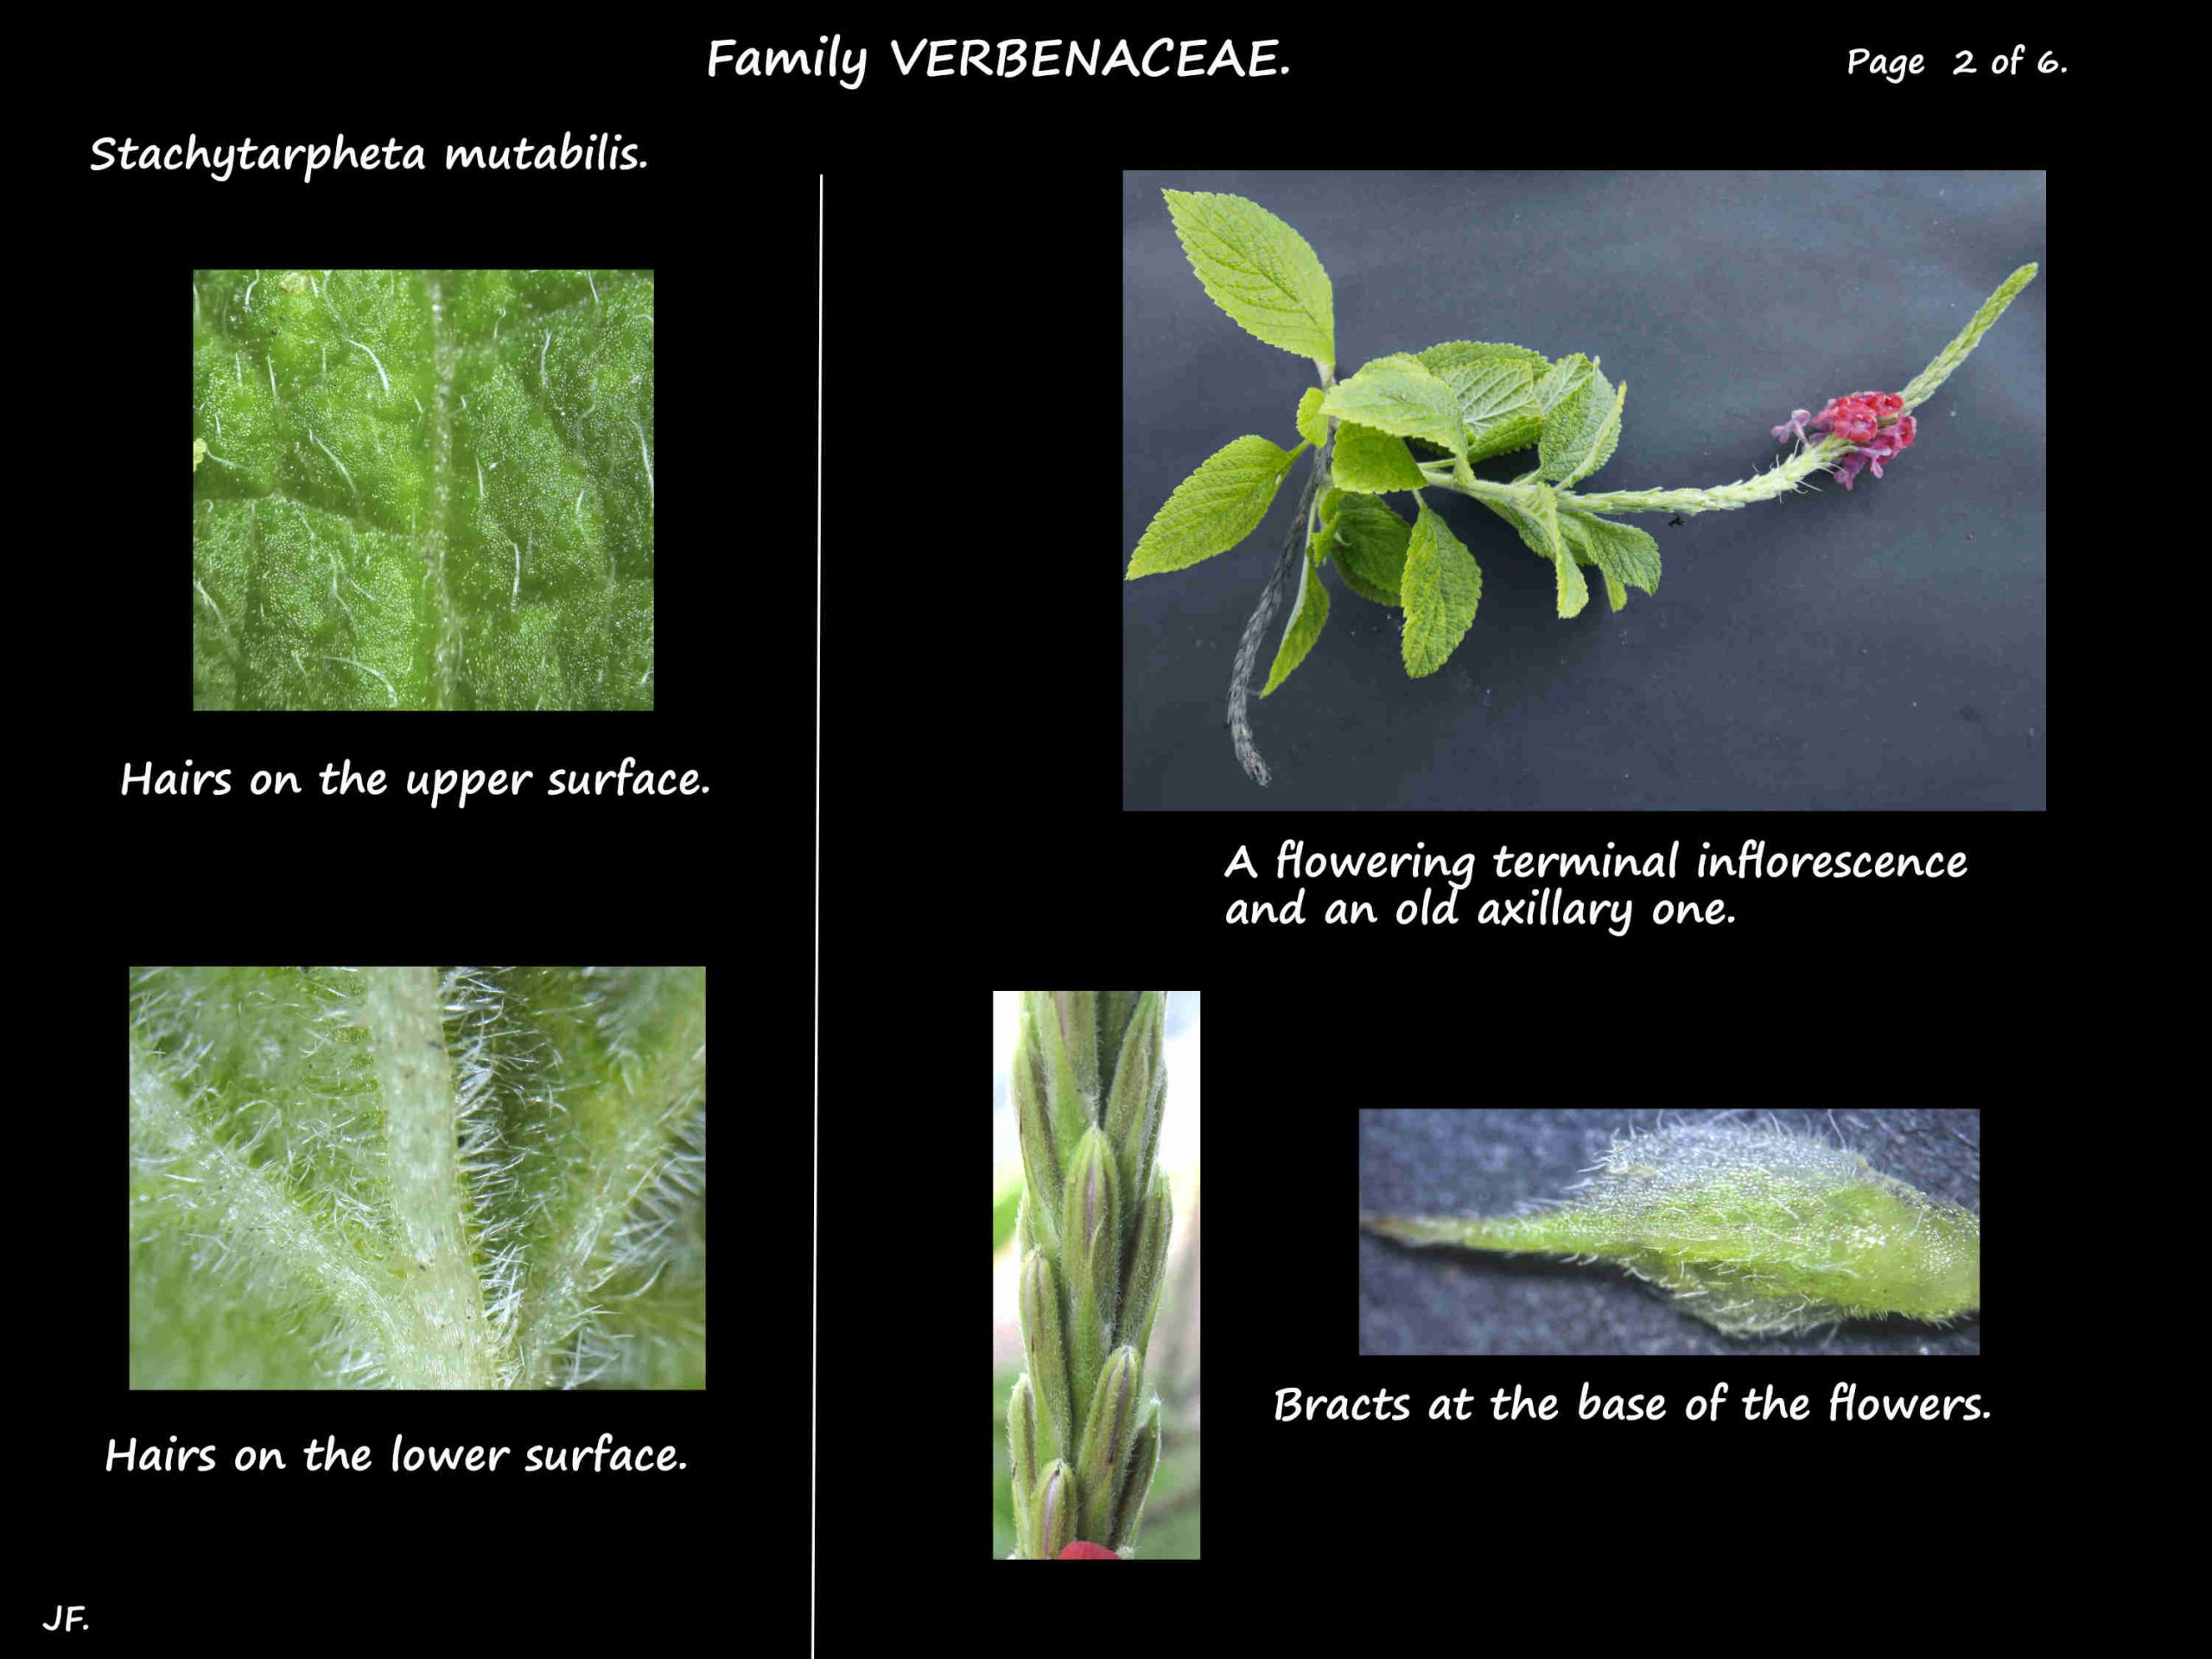 2 Stachytarpheta mutabilis leaf hairs